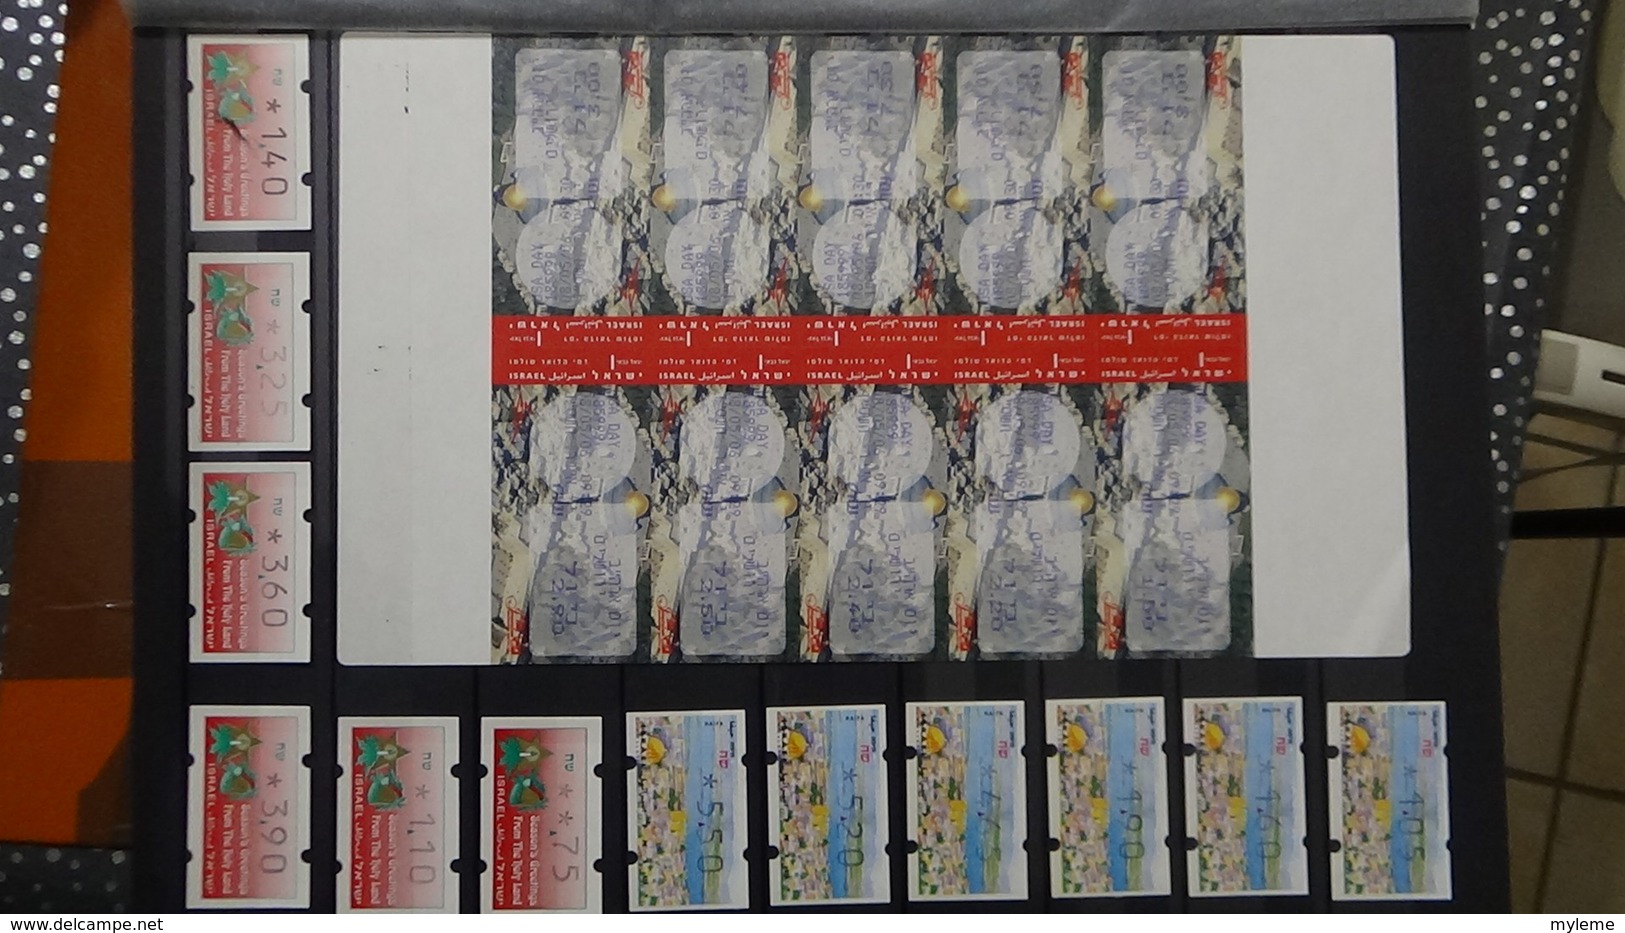 B408  Collection d'Israël avec tabs en timbres et blocs tous **. A saisir !!!